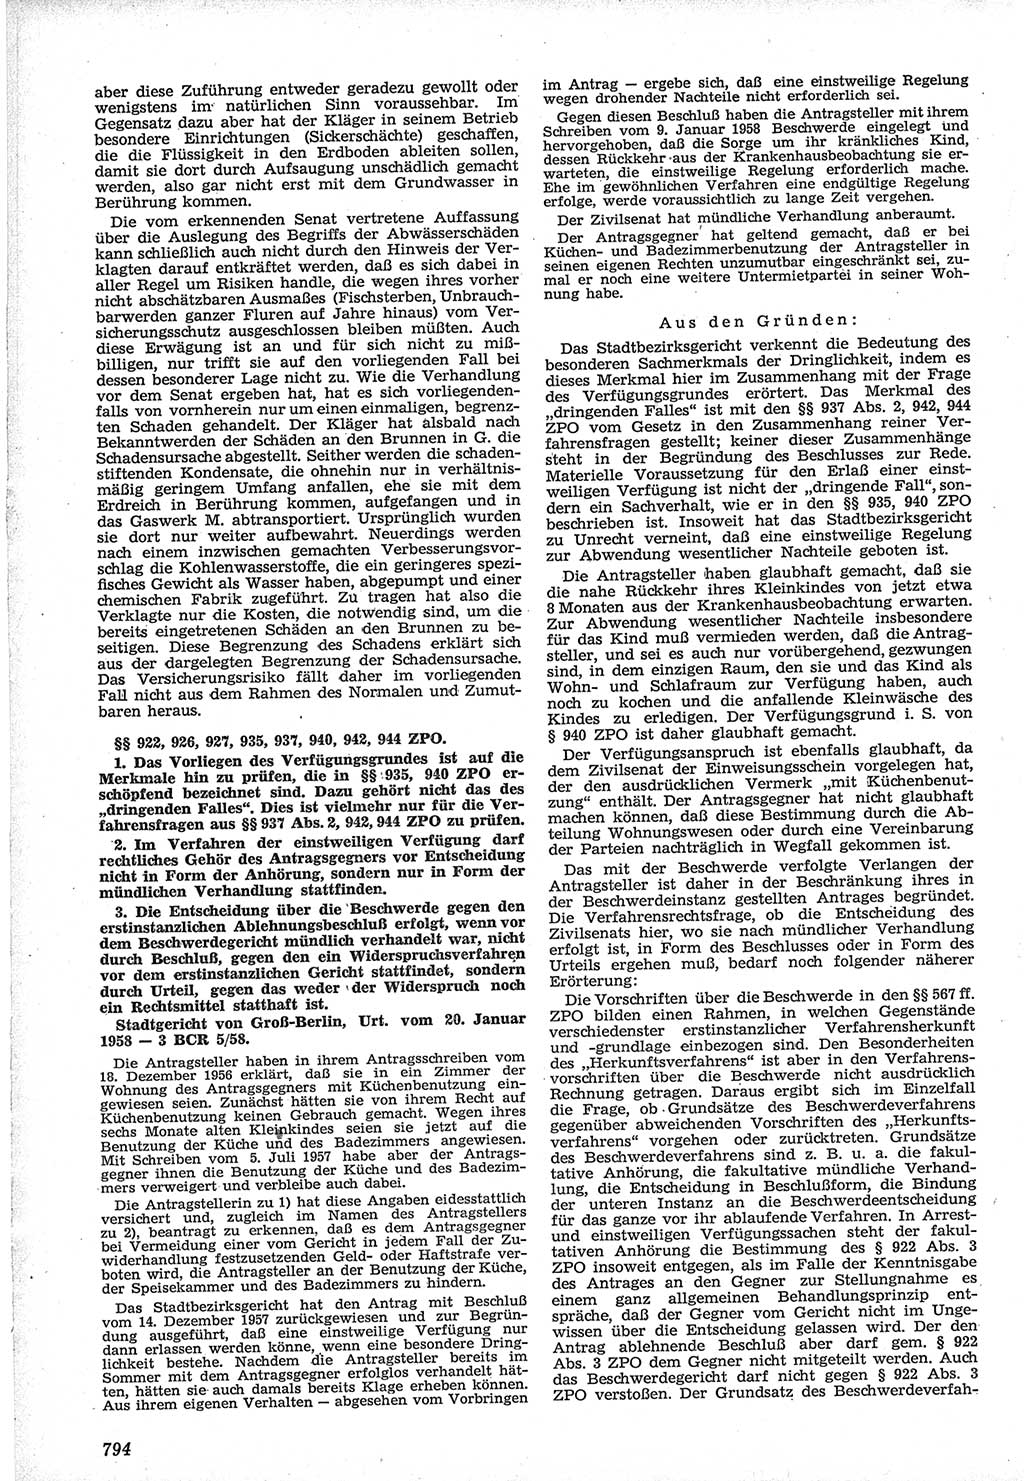 Neue Justiz (NJ), Zeitschrift für Recht und Rechtswissenschaft [Deutsche Demokratische Republik (DDR)], 12. Jahrgang 1958, Seite 794 (NJ DDR 1958, S. 794)